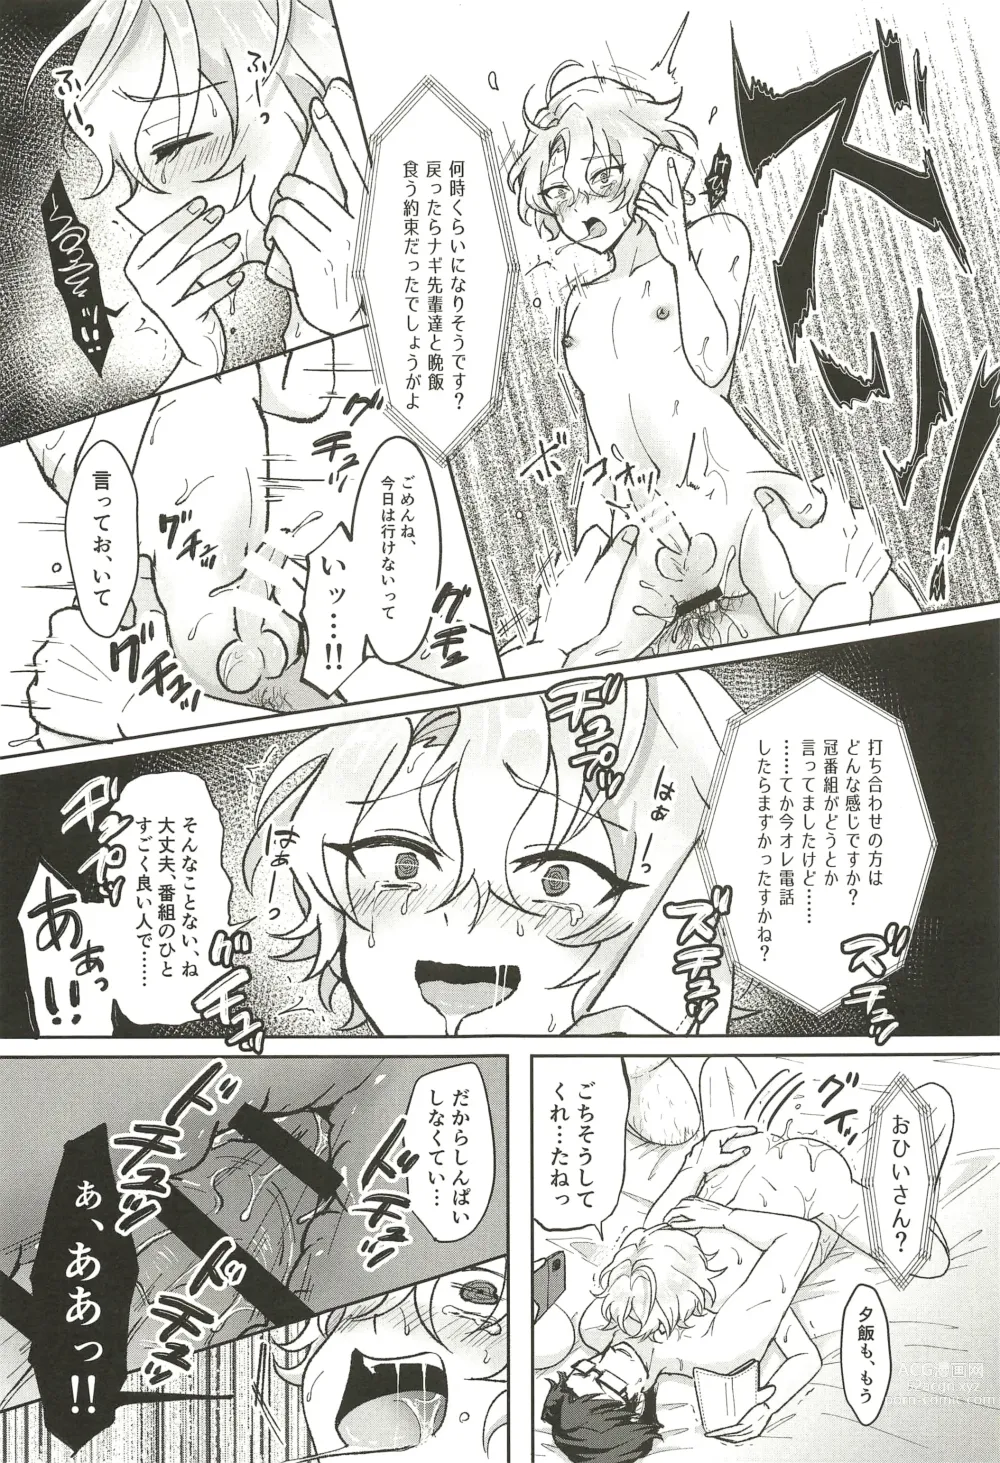 Page 59 of doujinshi Ochiru.